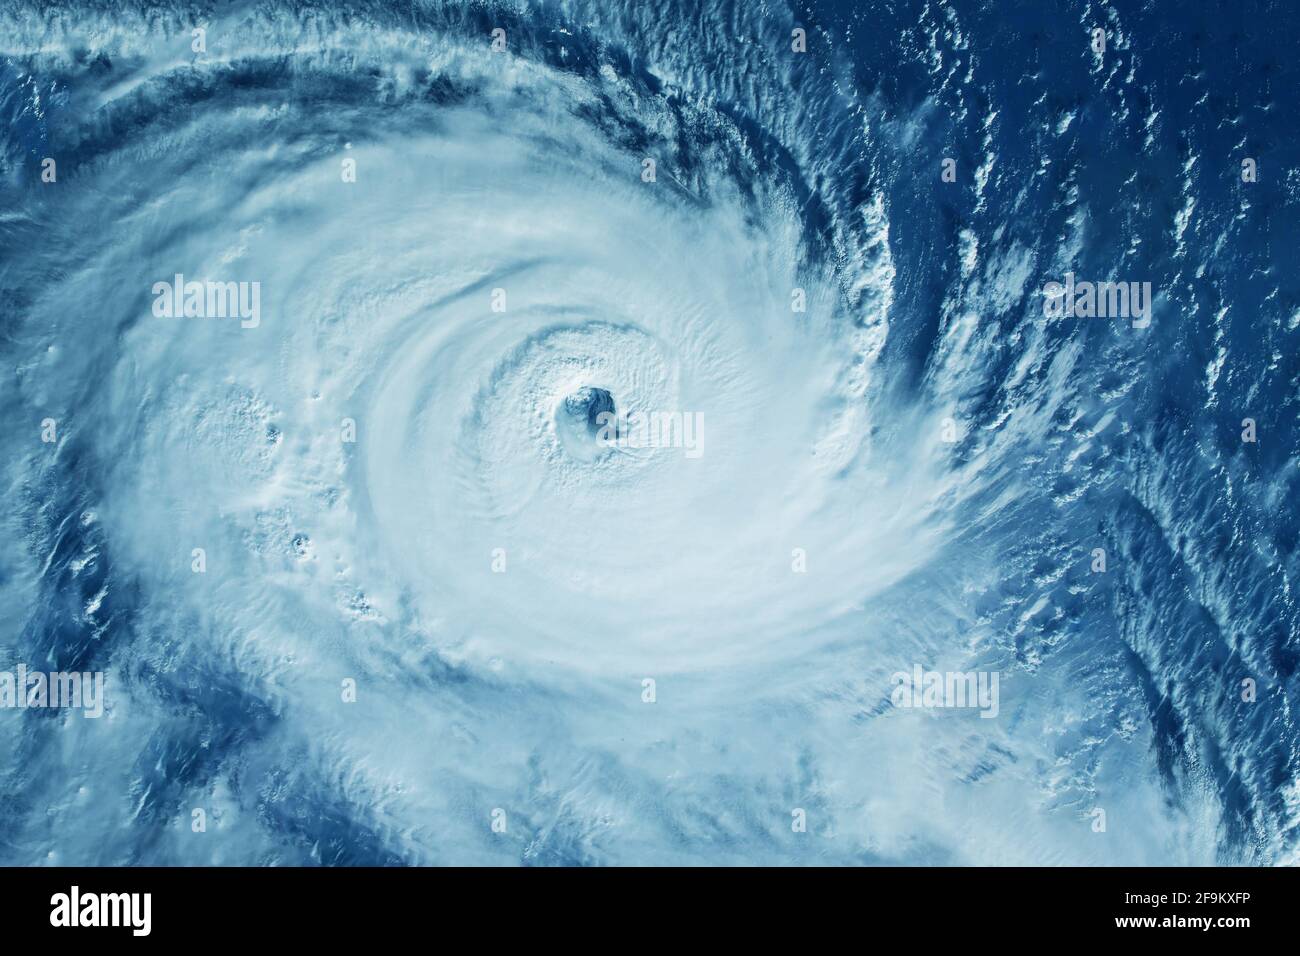 Großer Hurrikan aus dem All. Elemente dieses Bildes wurden von der NASA eingerichtet. Hochwertige Fotos Stockfoto